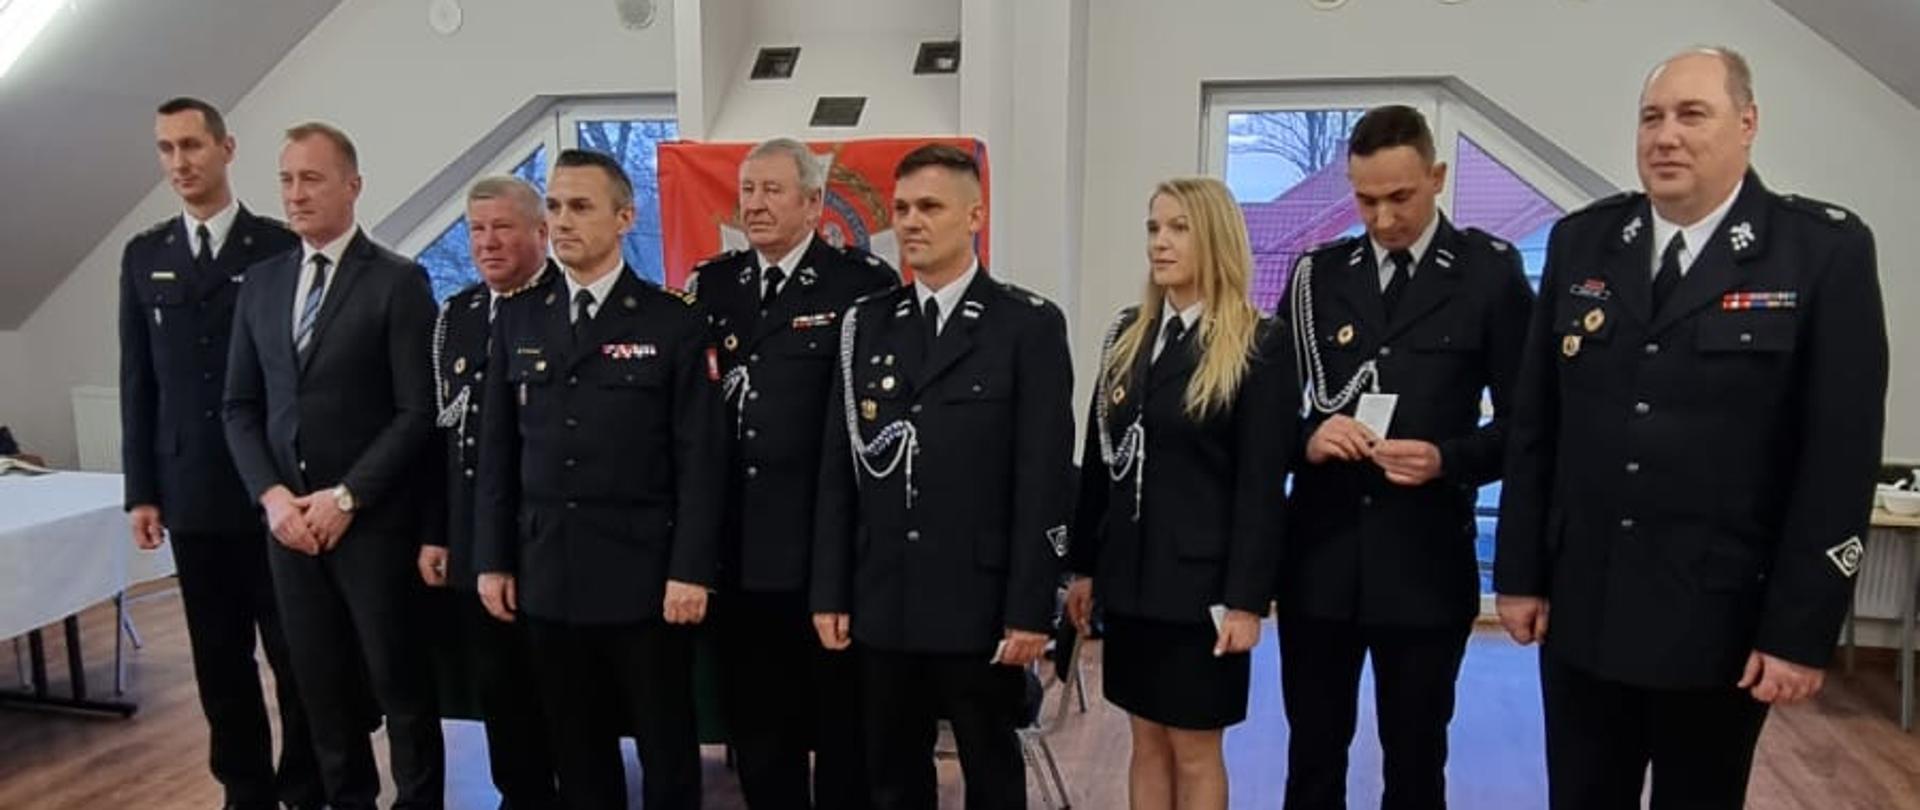 Zdjęcie przedstawia gości i organizatorów spotkania sprawozdawczego Ochotniczej Straży Pożarnej w Woli Jachowej.